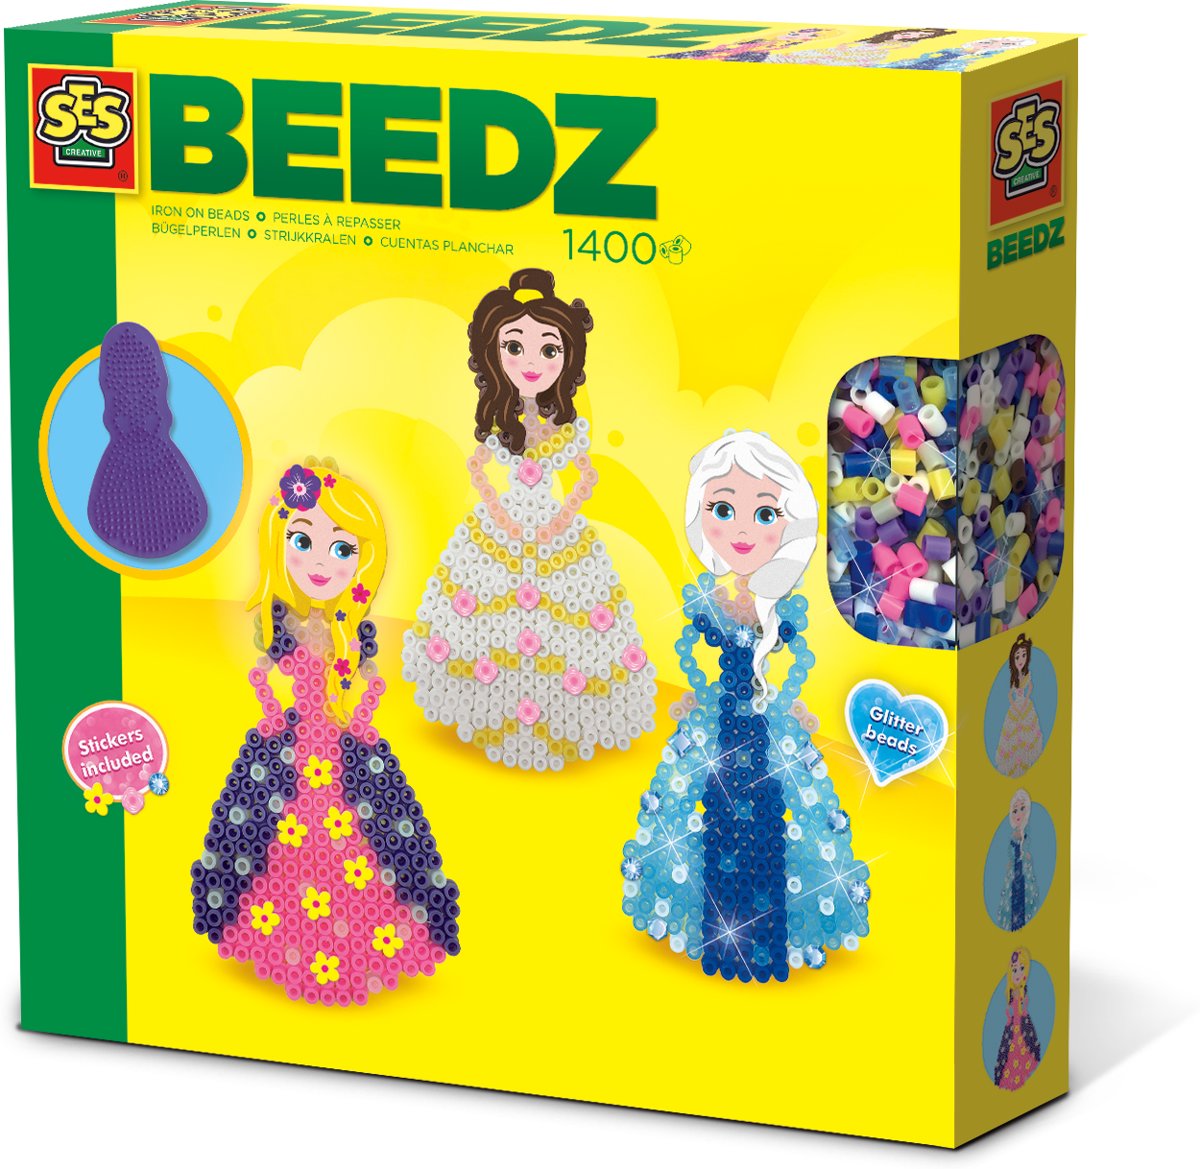   Beedz - Prinsessen